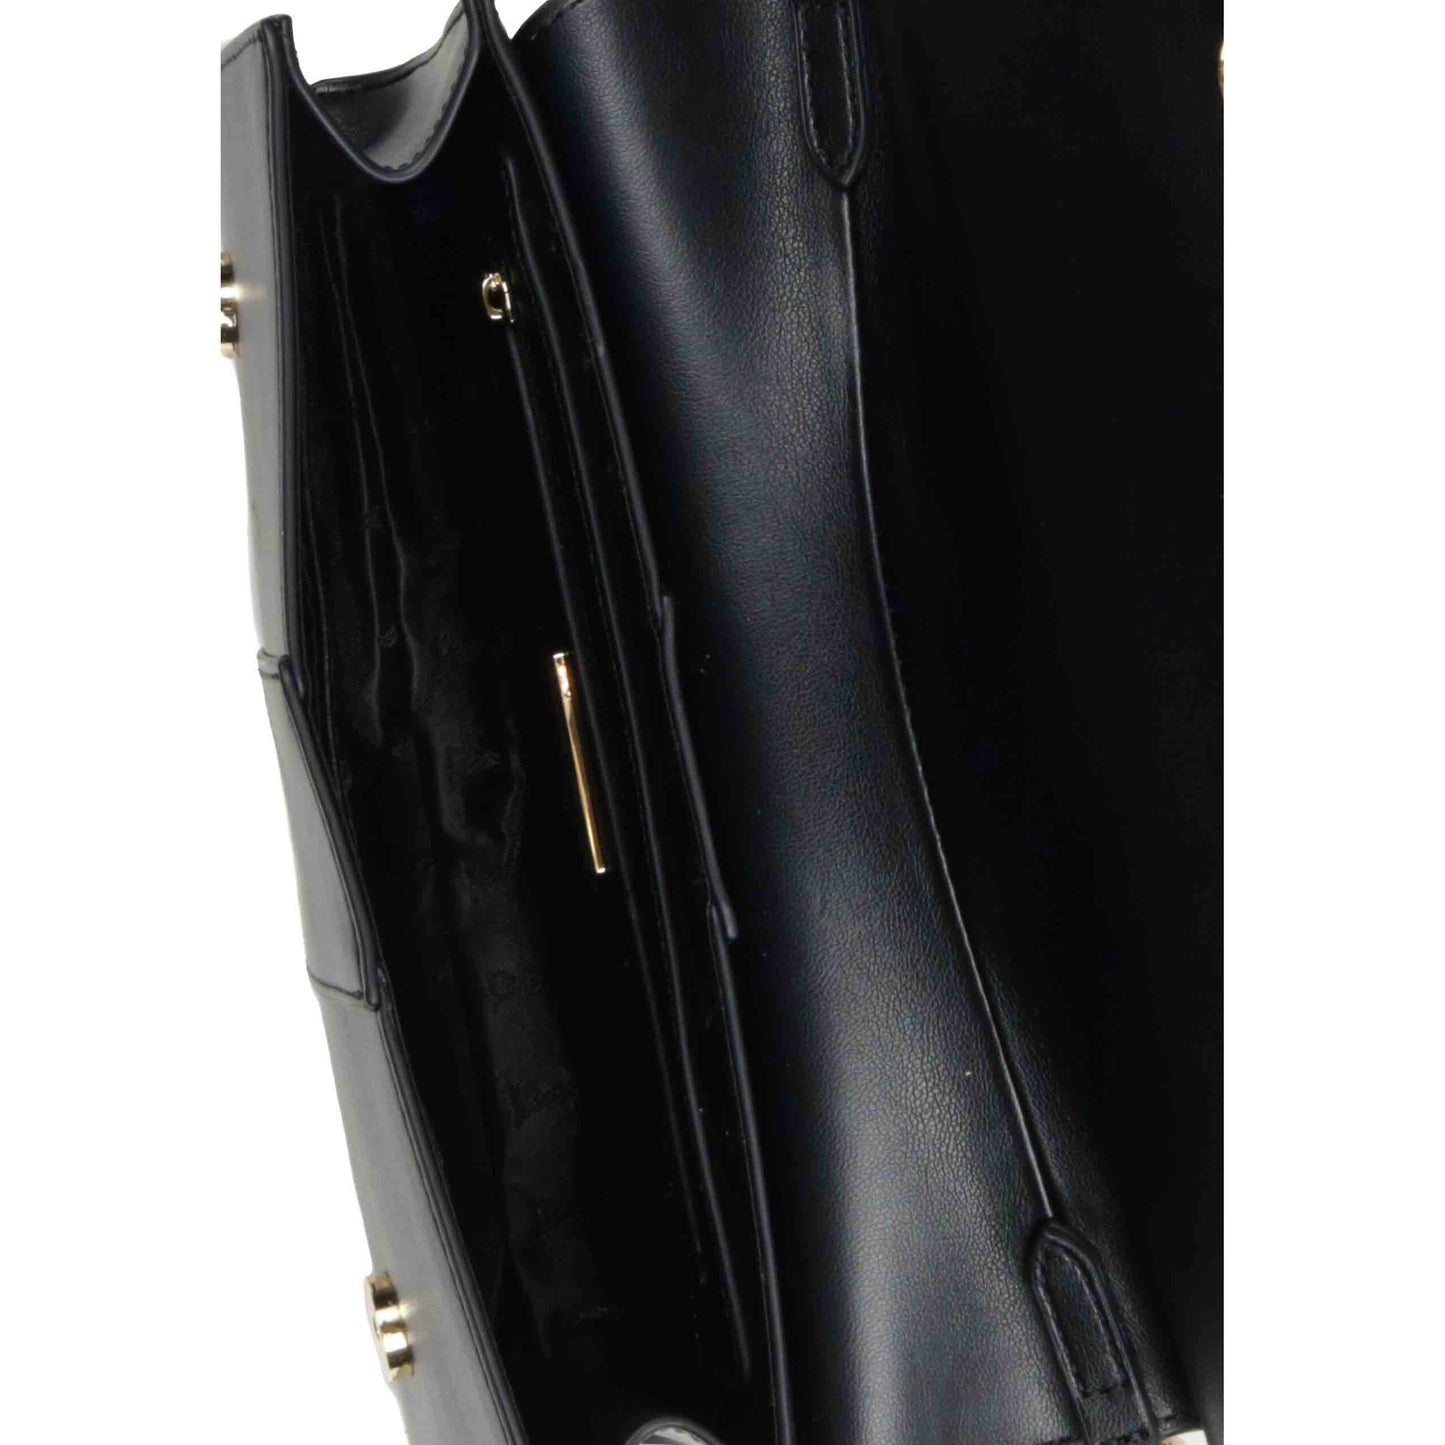 LAtelier du Sac borsello nero con logo oro piu tracolla modello Arlette